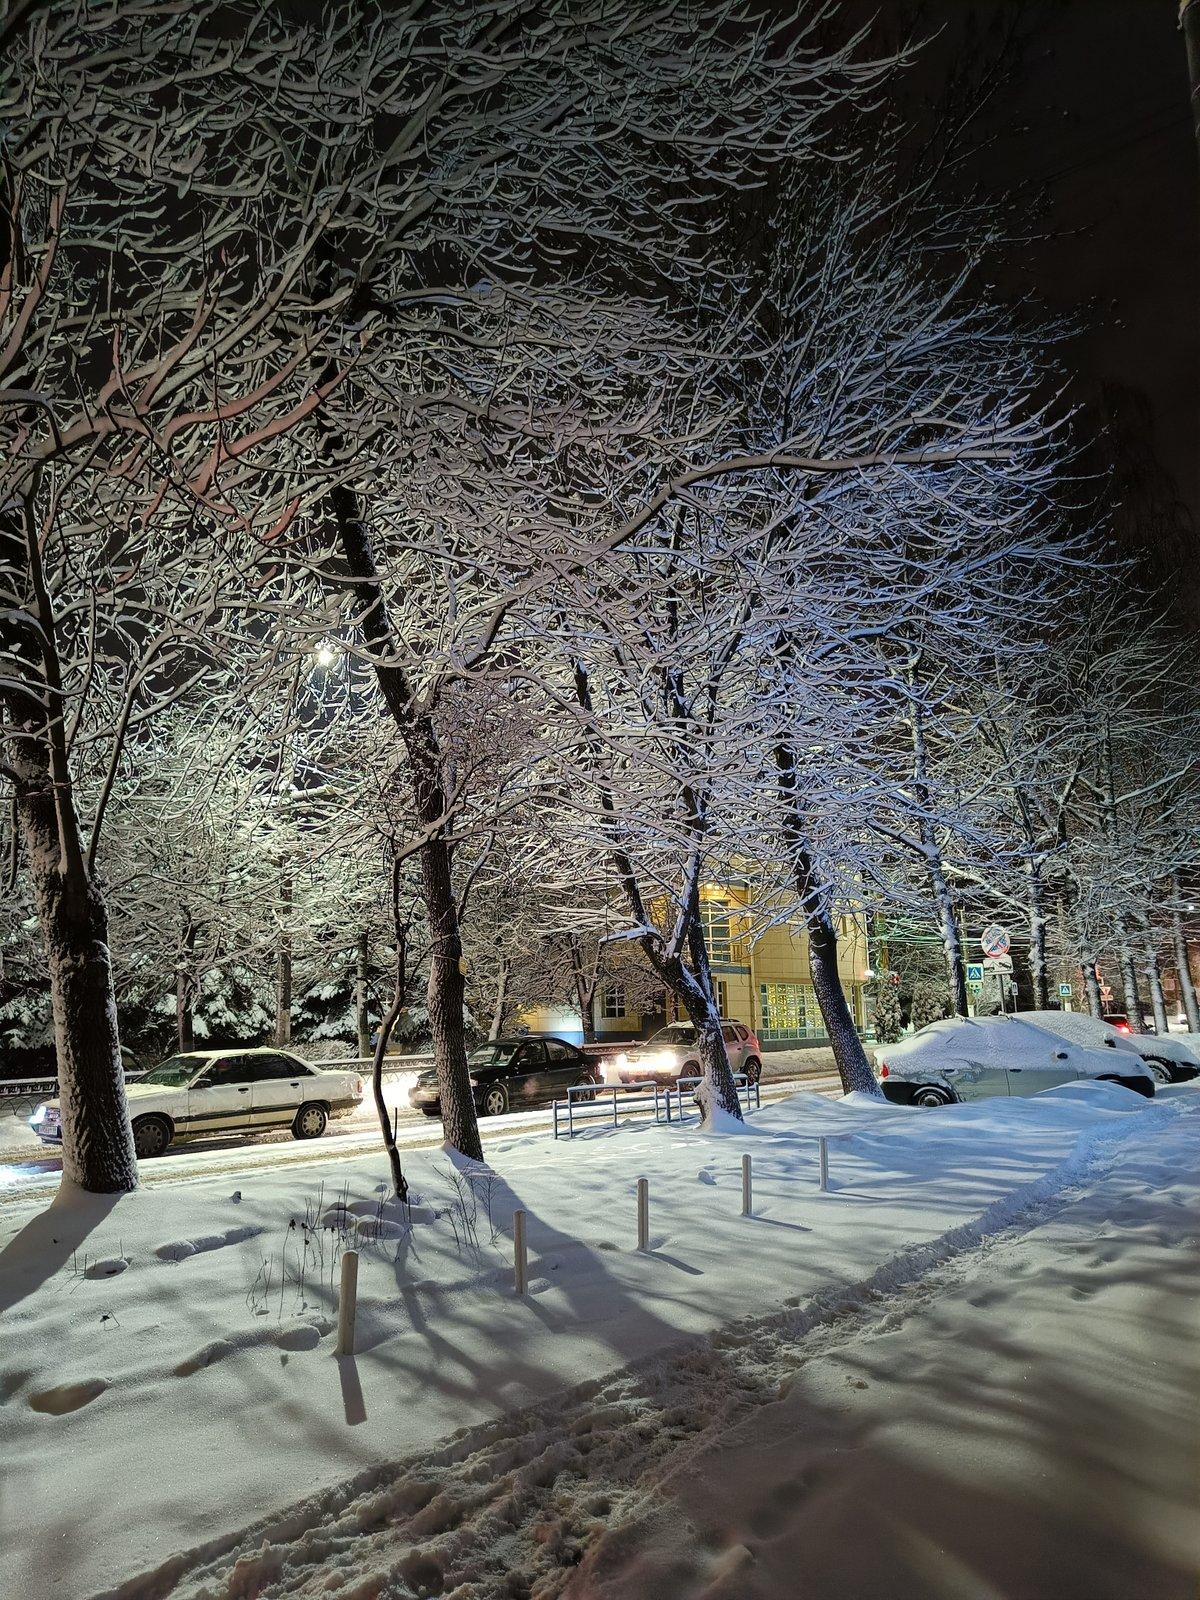 Календарная зима в столичном регионе началась с 20-градусных морозов -  Газета.Ru | Новости